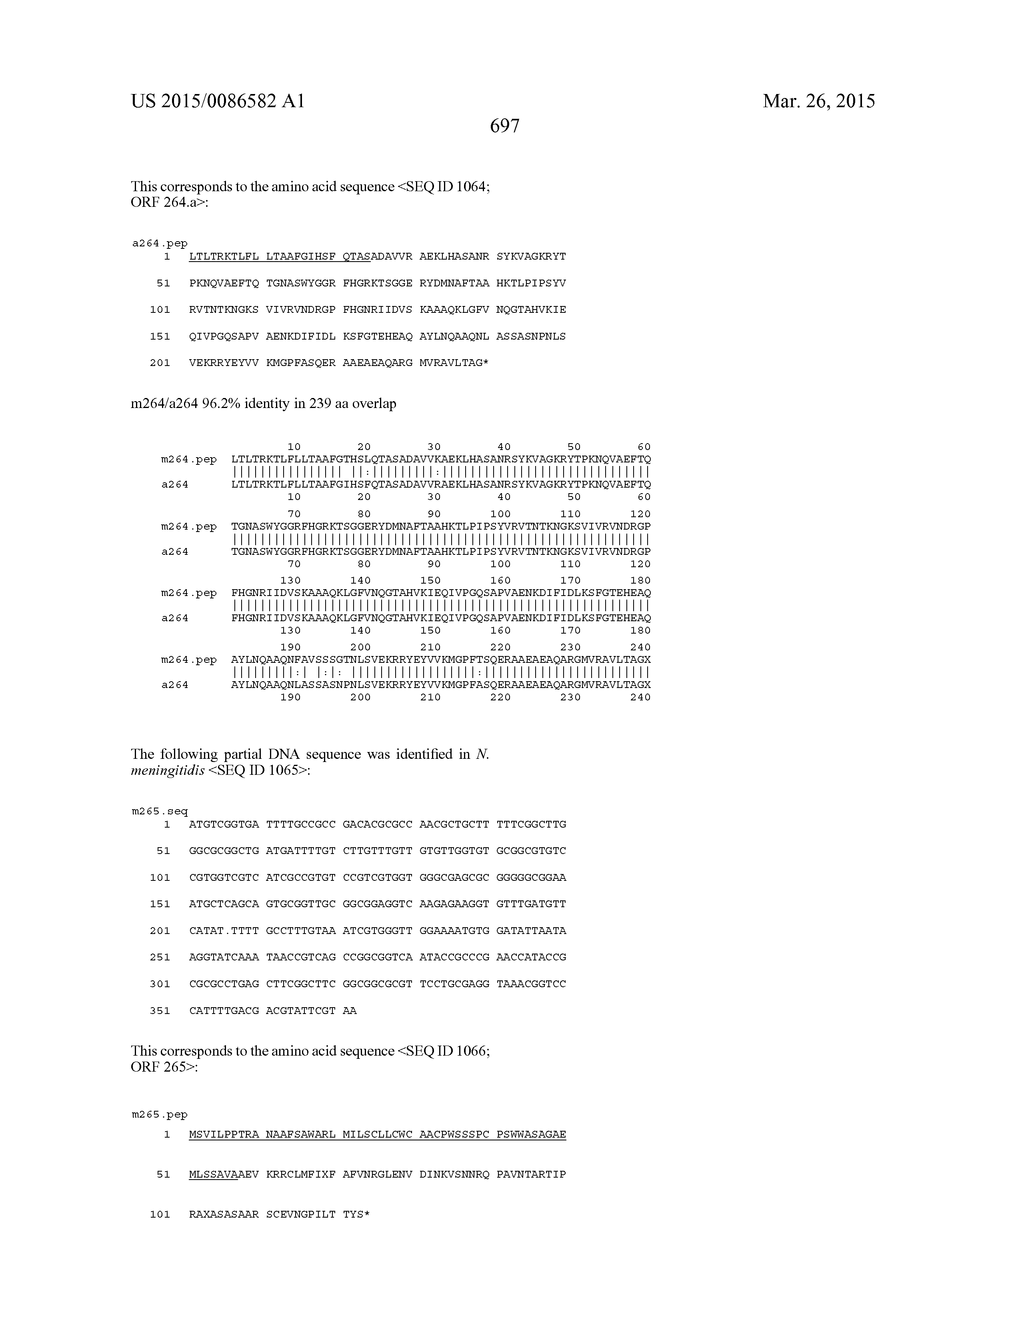 NEISSERIA MENINGITIDIS ANTIGENS AND COMPOSITIONS - diagram, schematic, and image 729